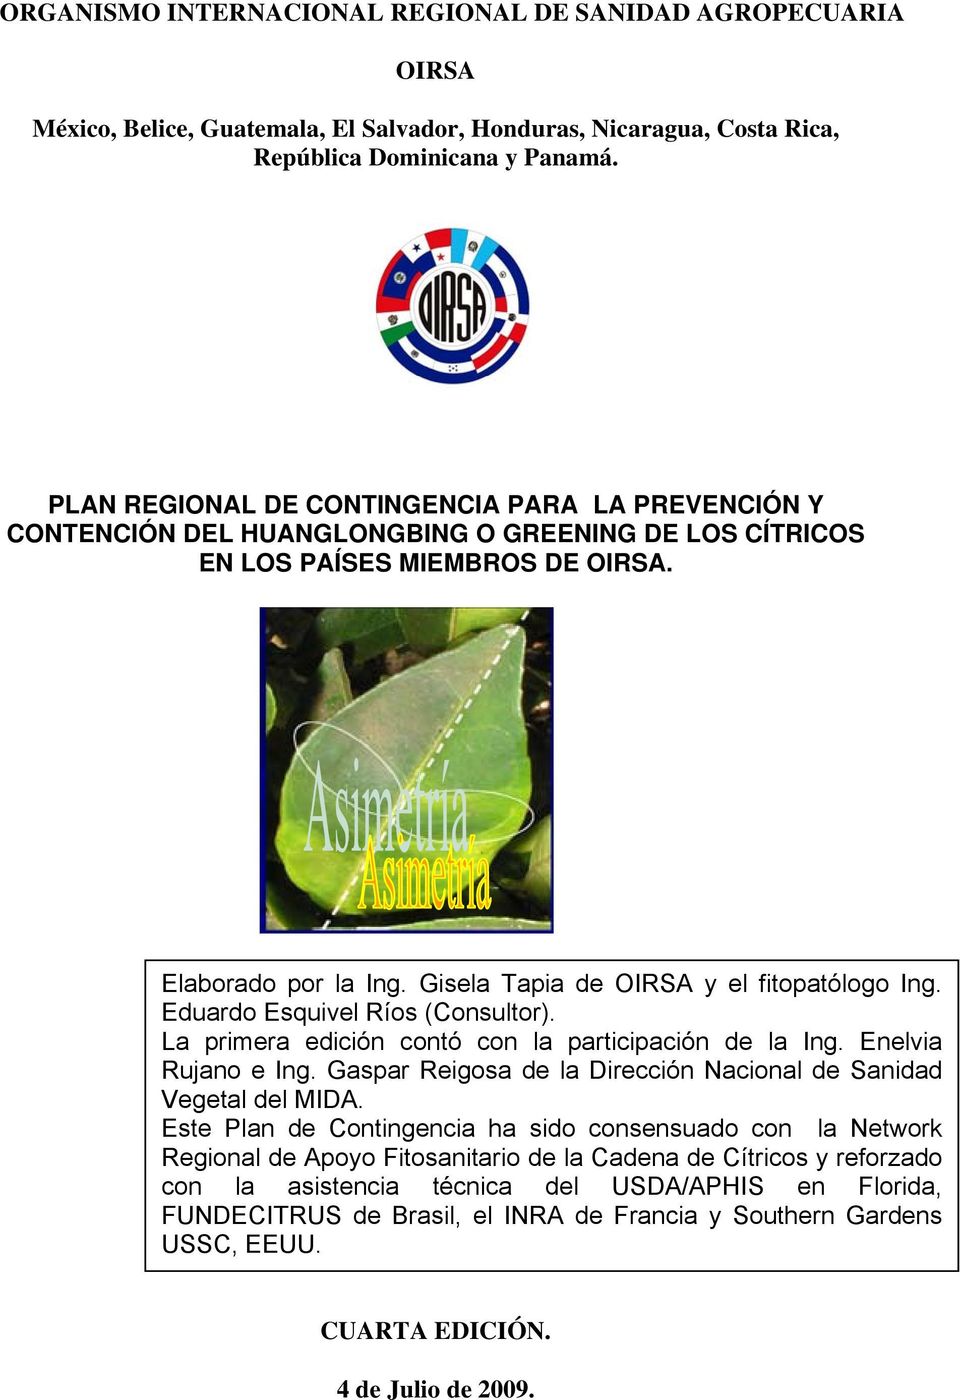 Gisela Tapia de OIRSA y el fitopatólogo Ing. Eduardo Esquivel Ríos (Consultor). La primera edición contó con la participación de la Ing. Enelvia Rujano e Ing.